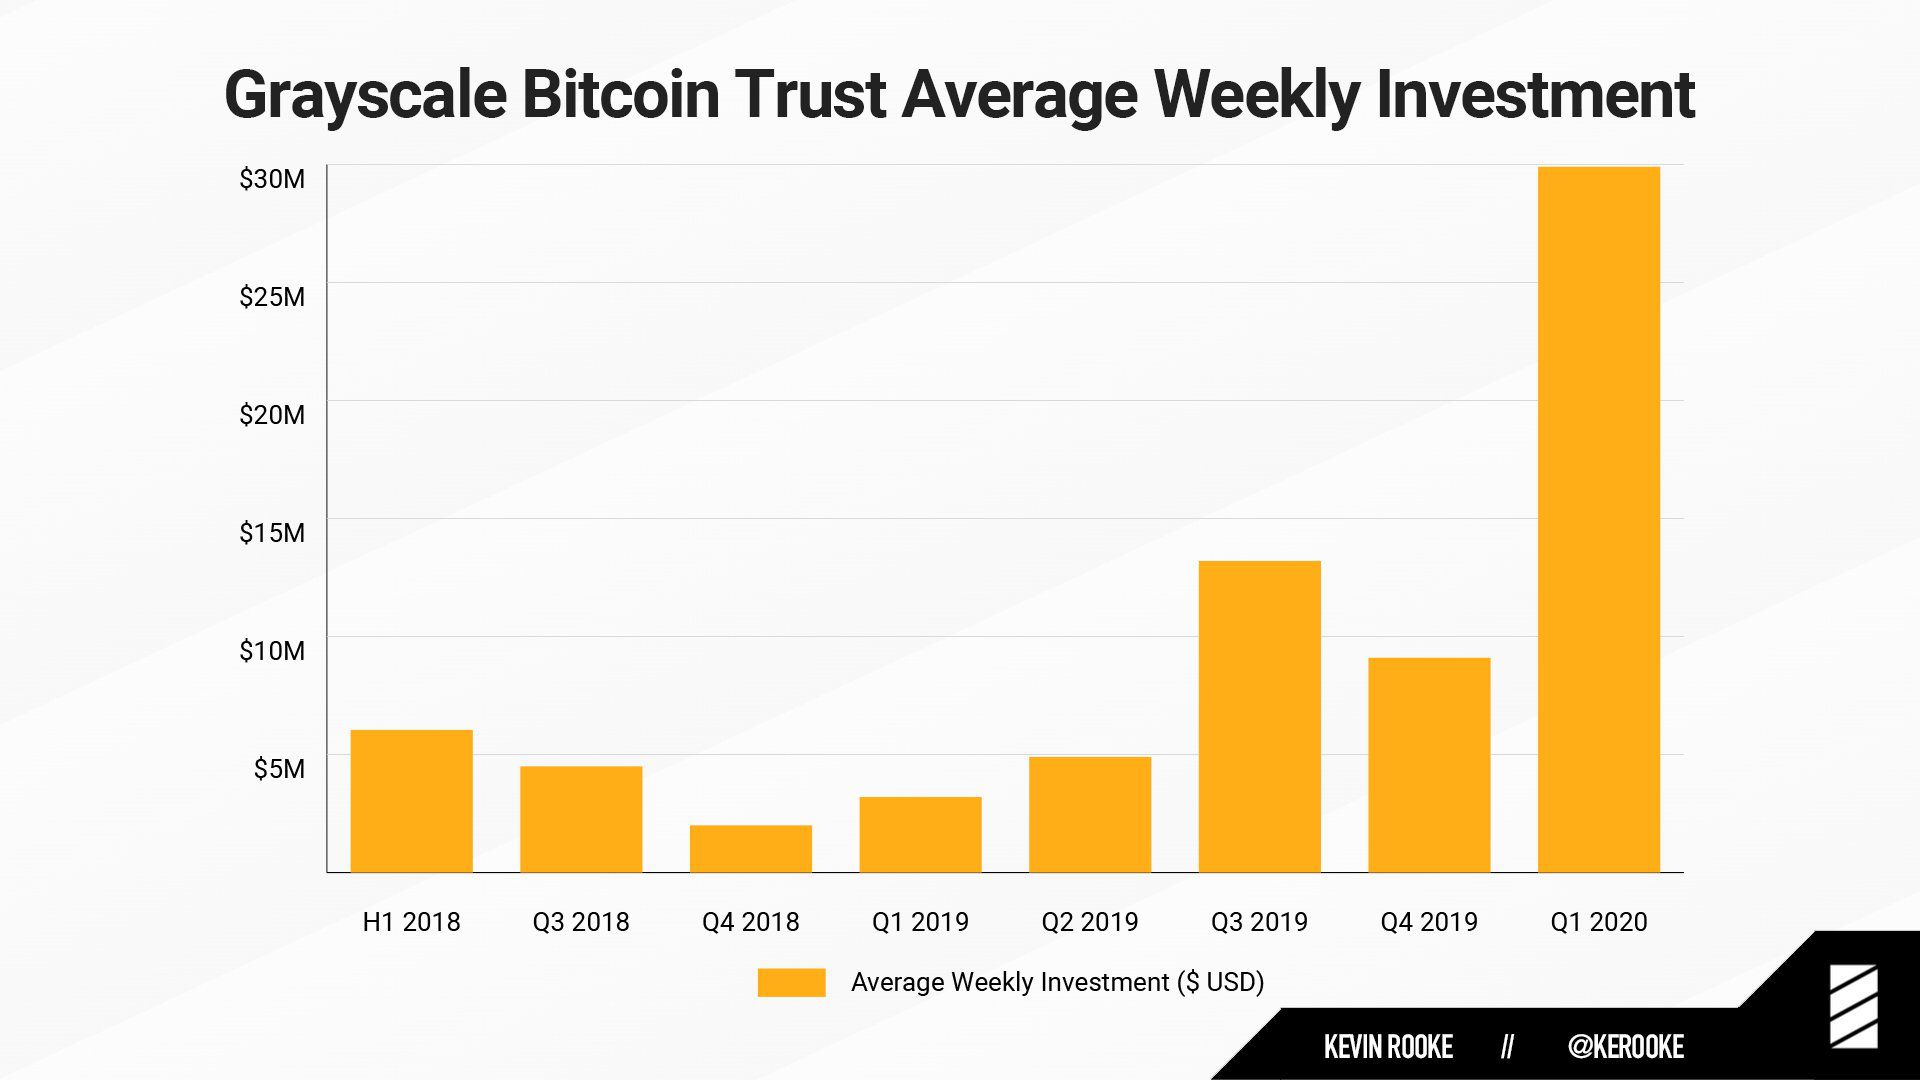 Thống kê giá trị đầu tư trung bình theo tuần trong nhiều quý của Grayscale Bitcoin Trust